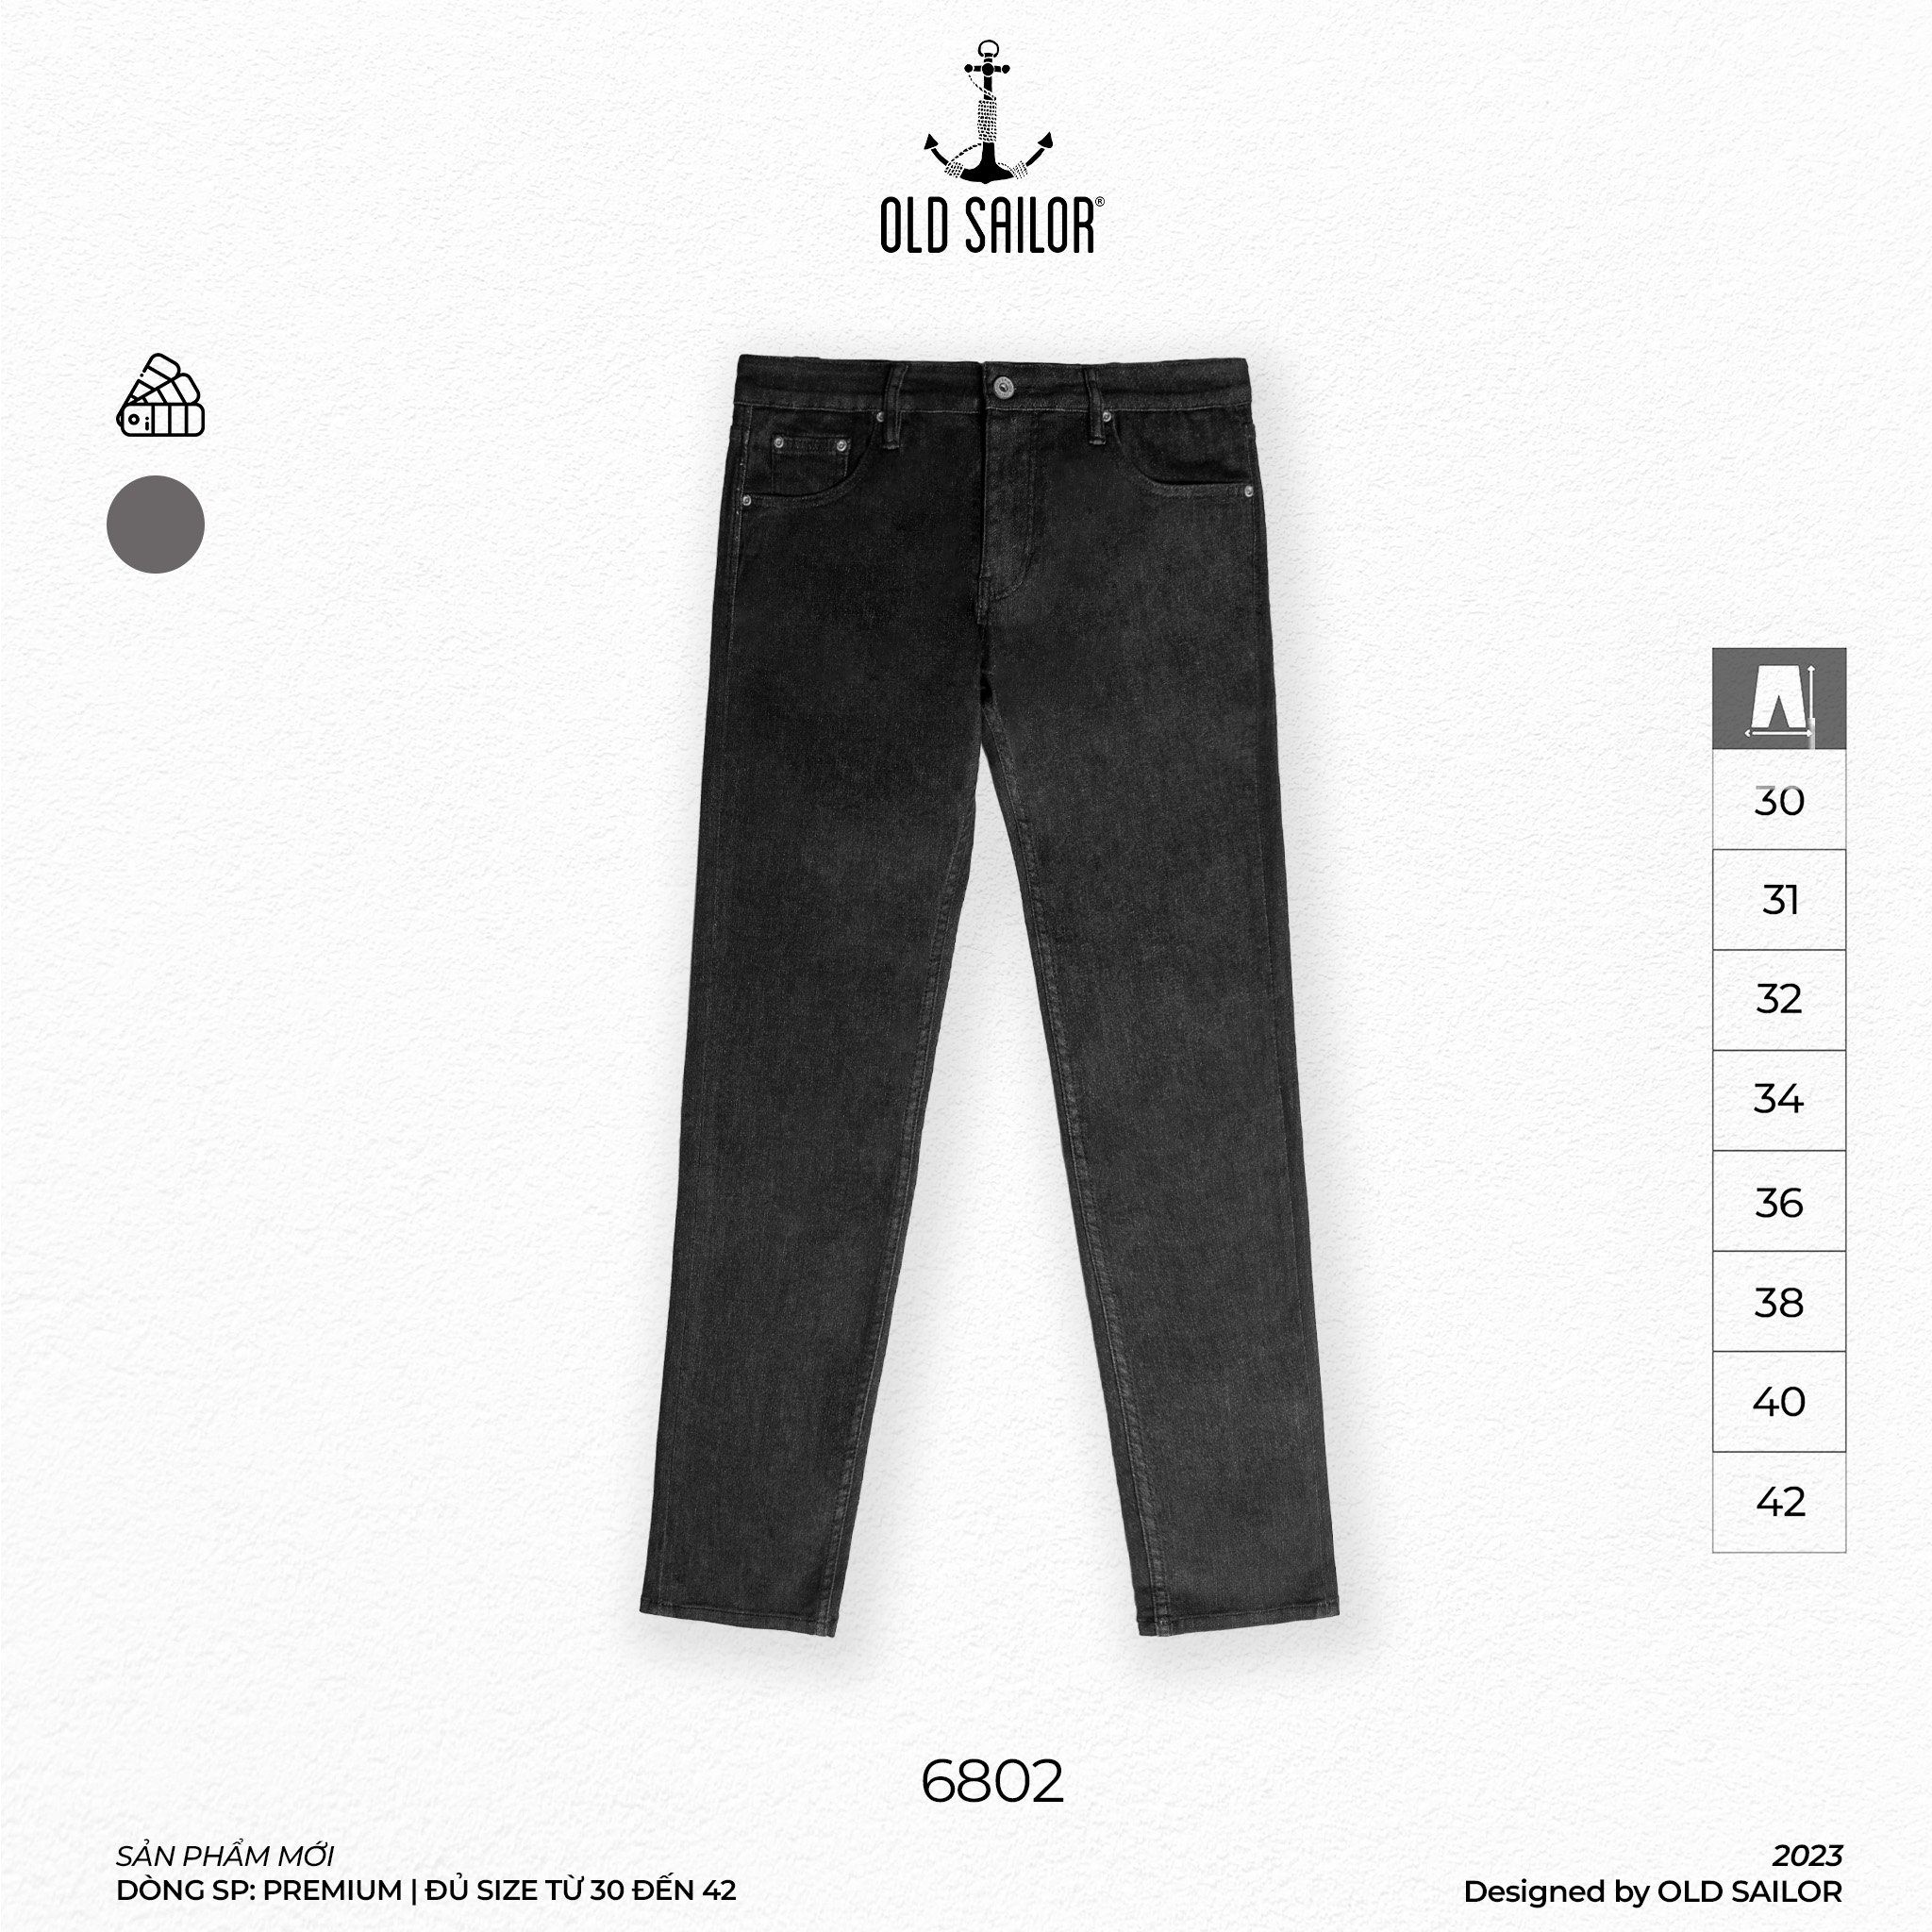 Quần jeans nam form slimfit Old Sailor - 6802 - Big size upto 42